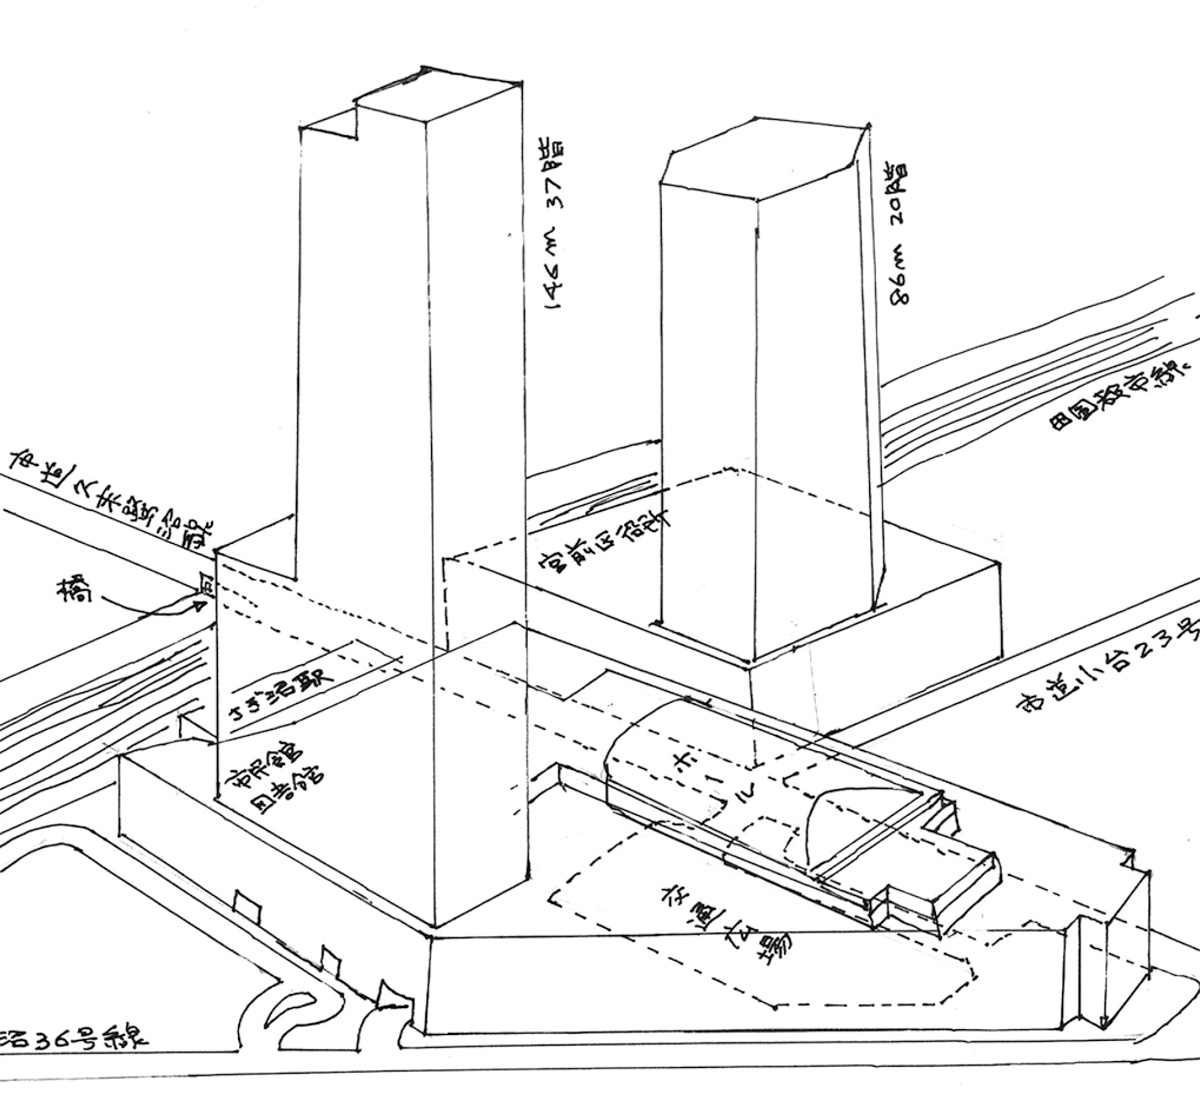 鷺沼駅前再開発で530戸の超高層大型マンション計画